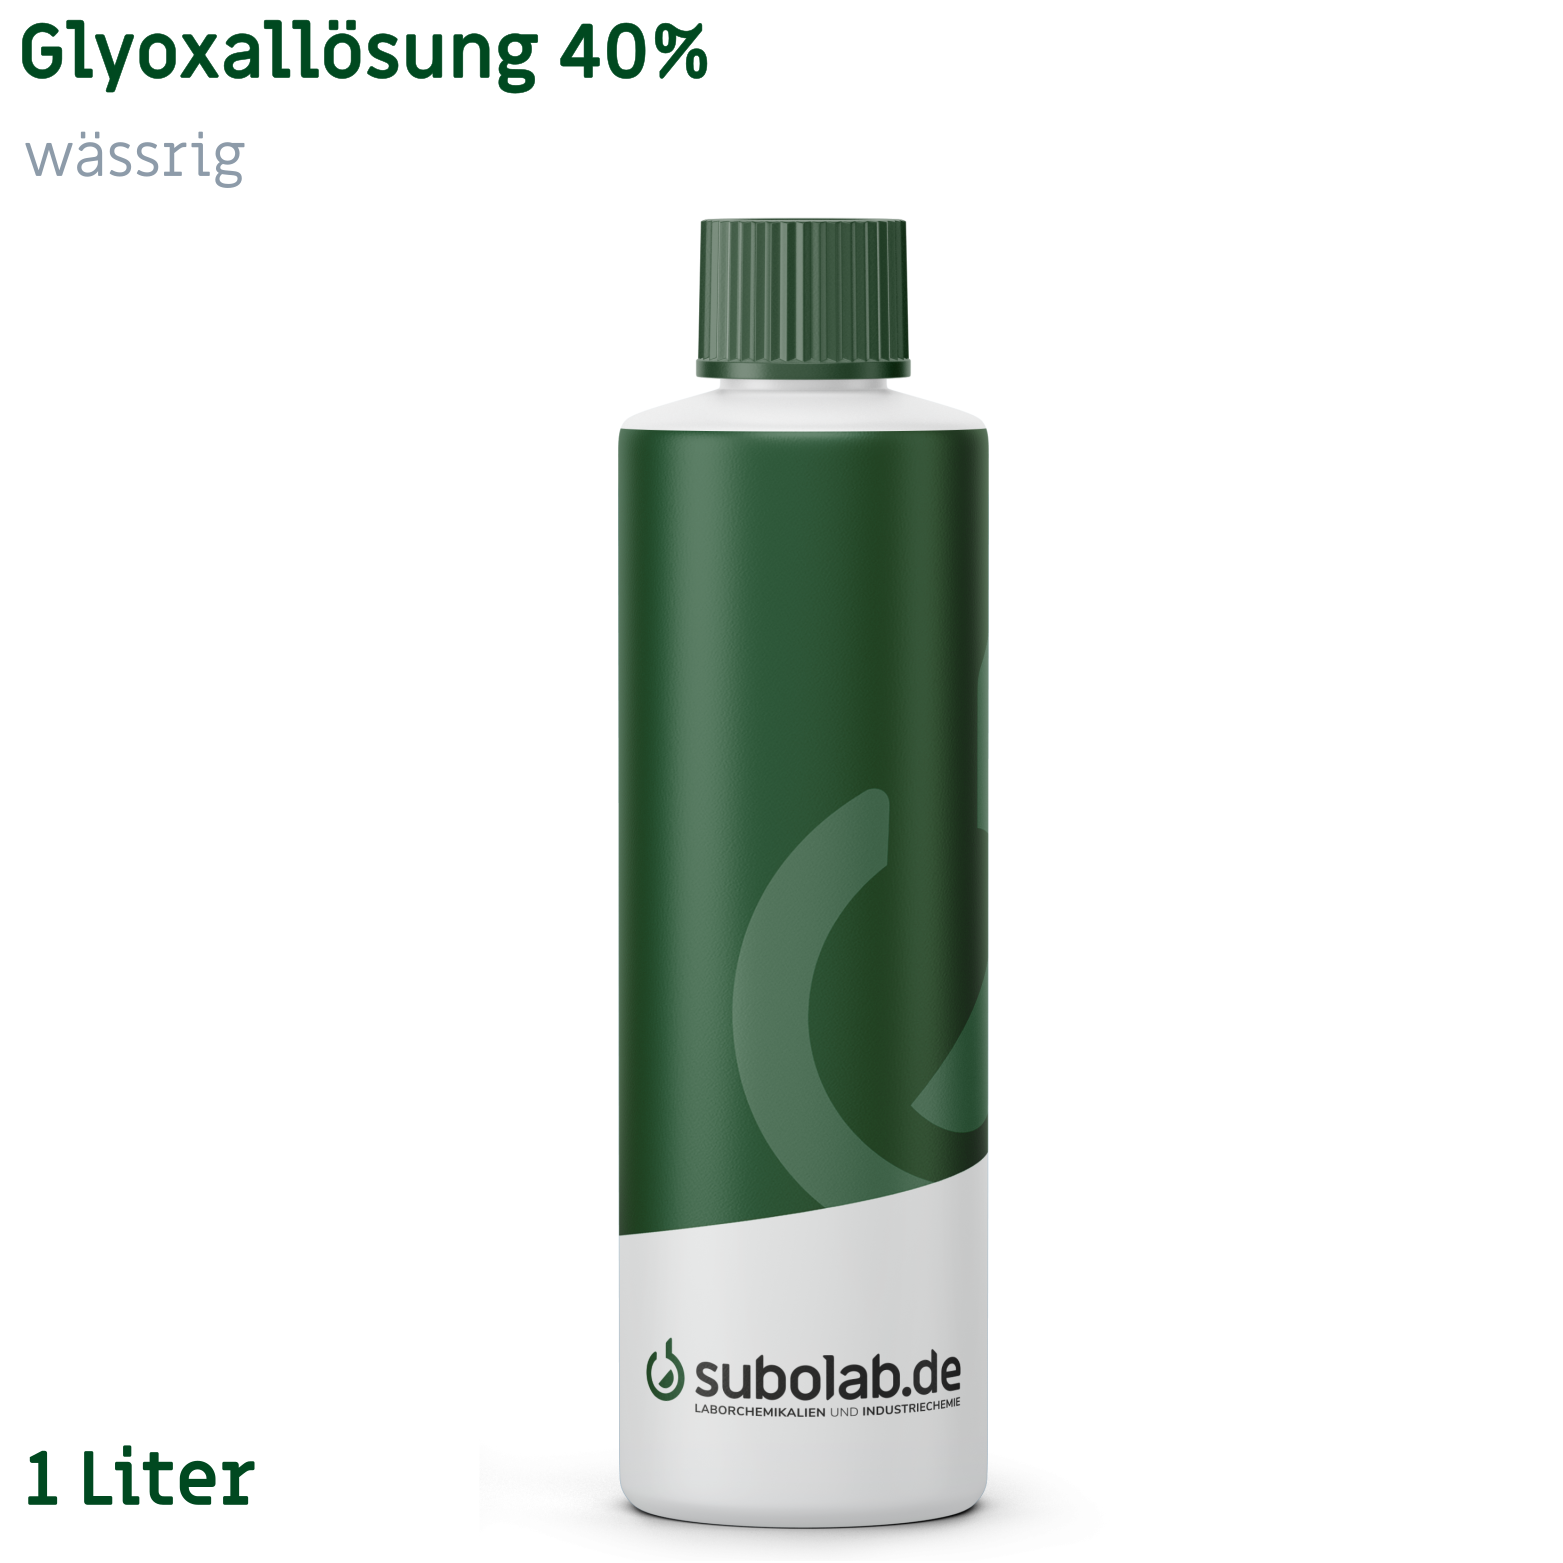 Bild von Glyoxallösung 40% wässrig (1 Liter)